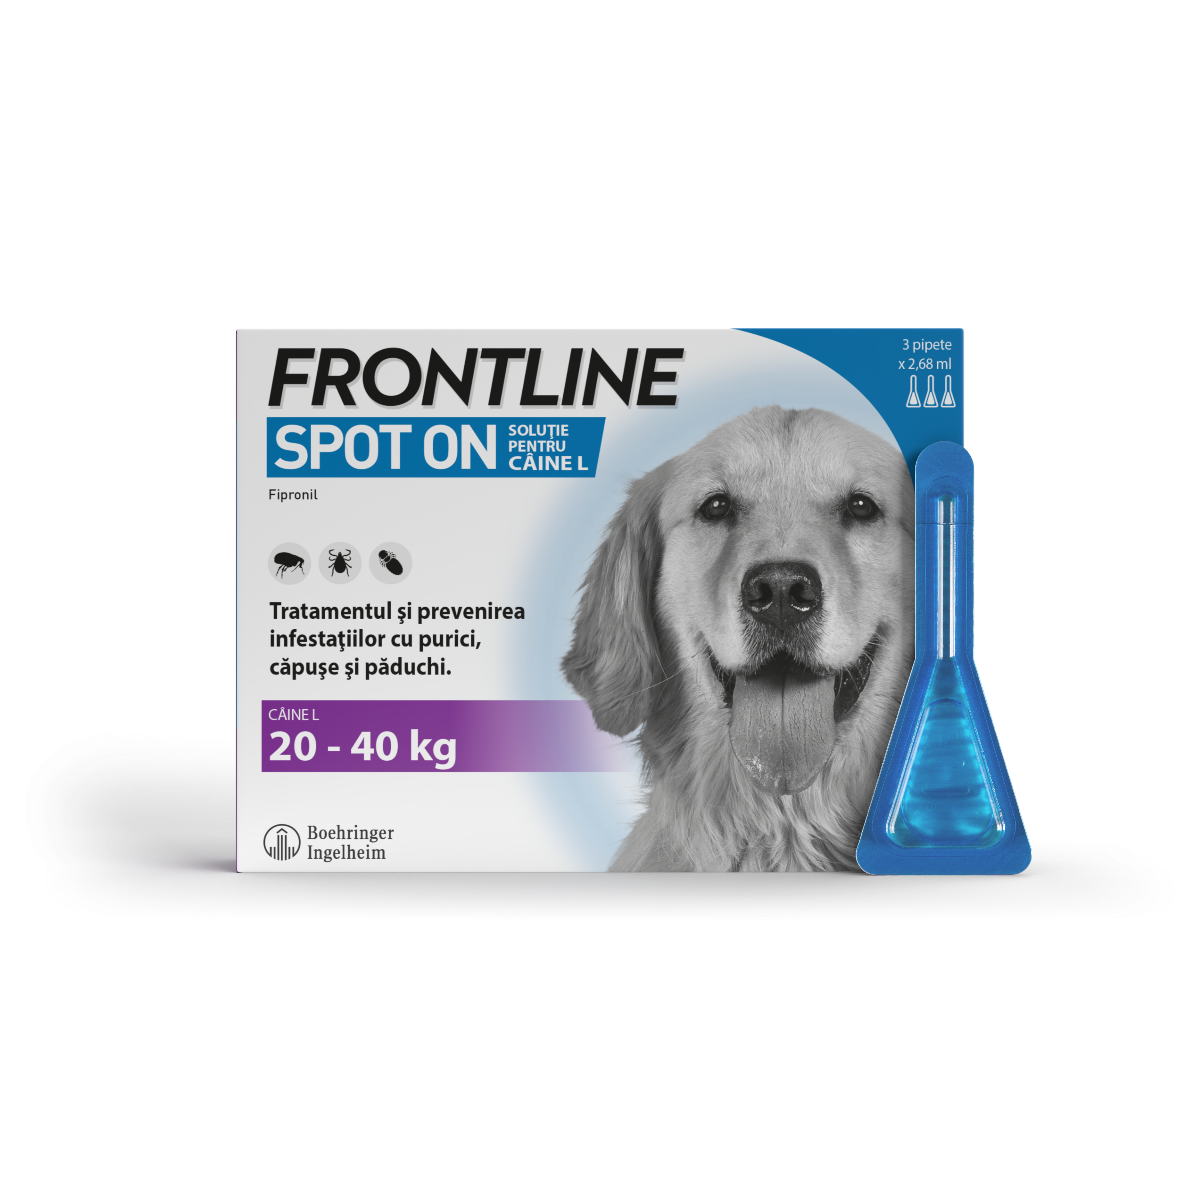 Frontline Spot On L, 20-40 kg, 3 pipete, Frontline